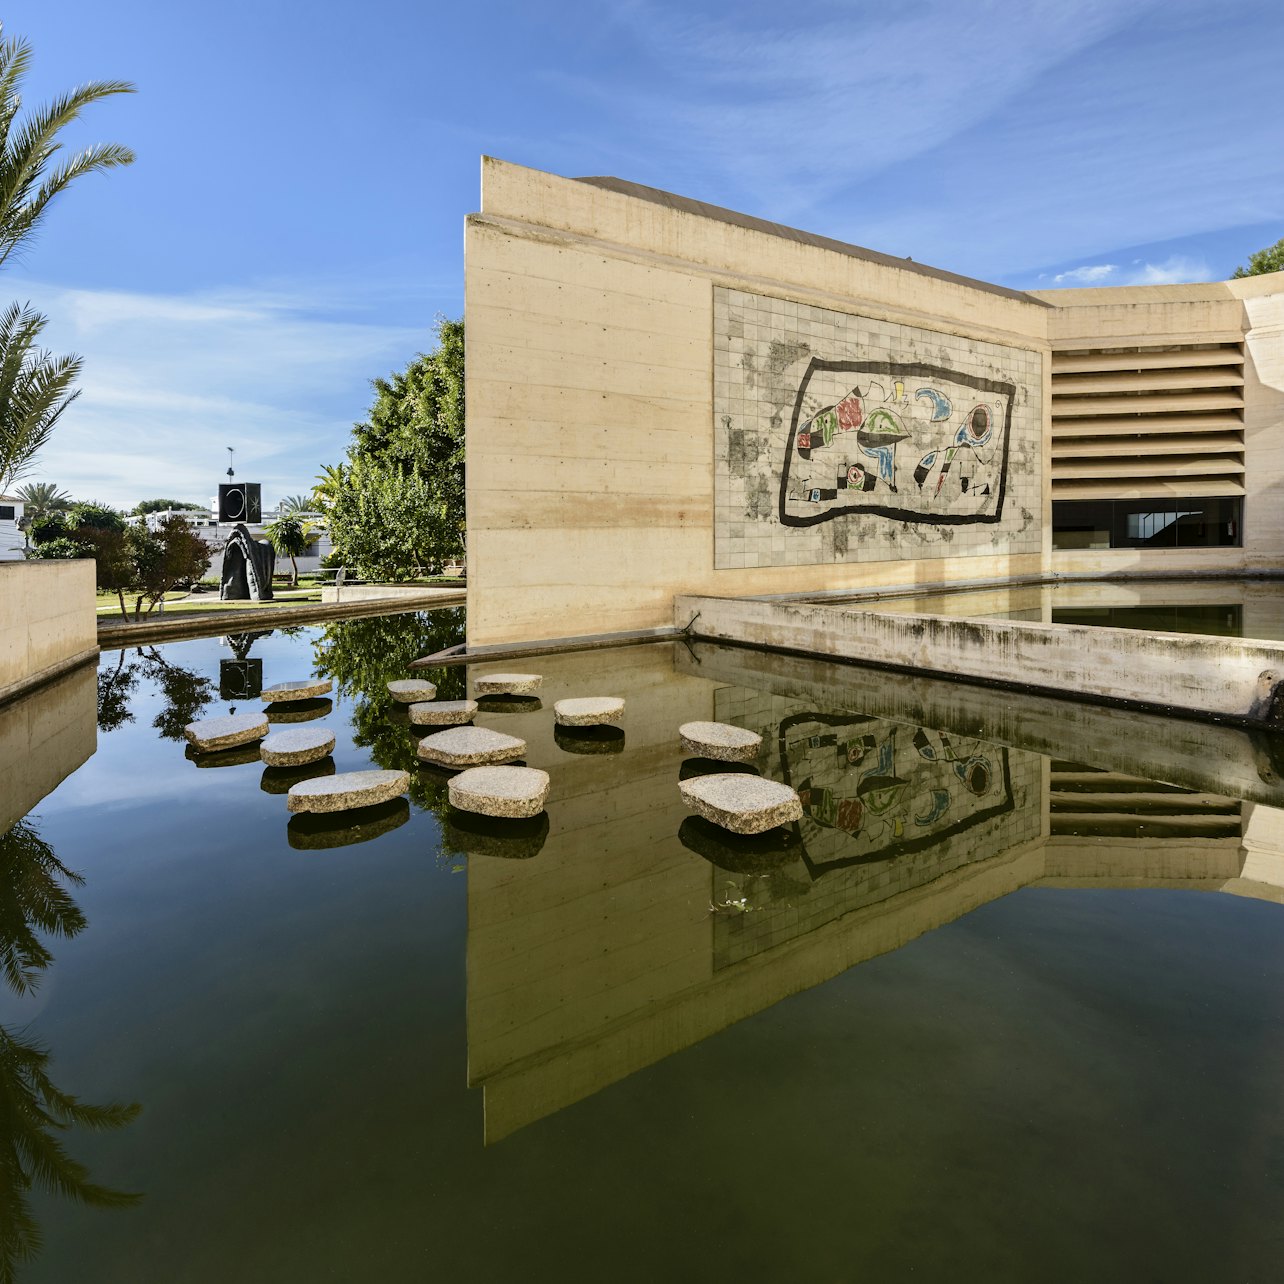 Fundació Miró Mallorca - Accommodations in Palma de Mallorca